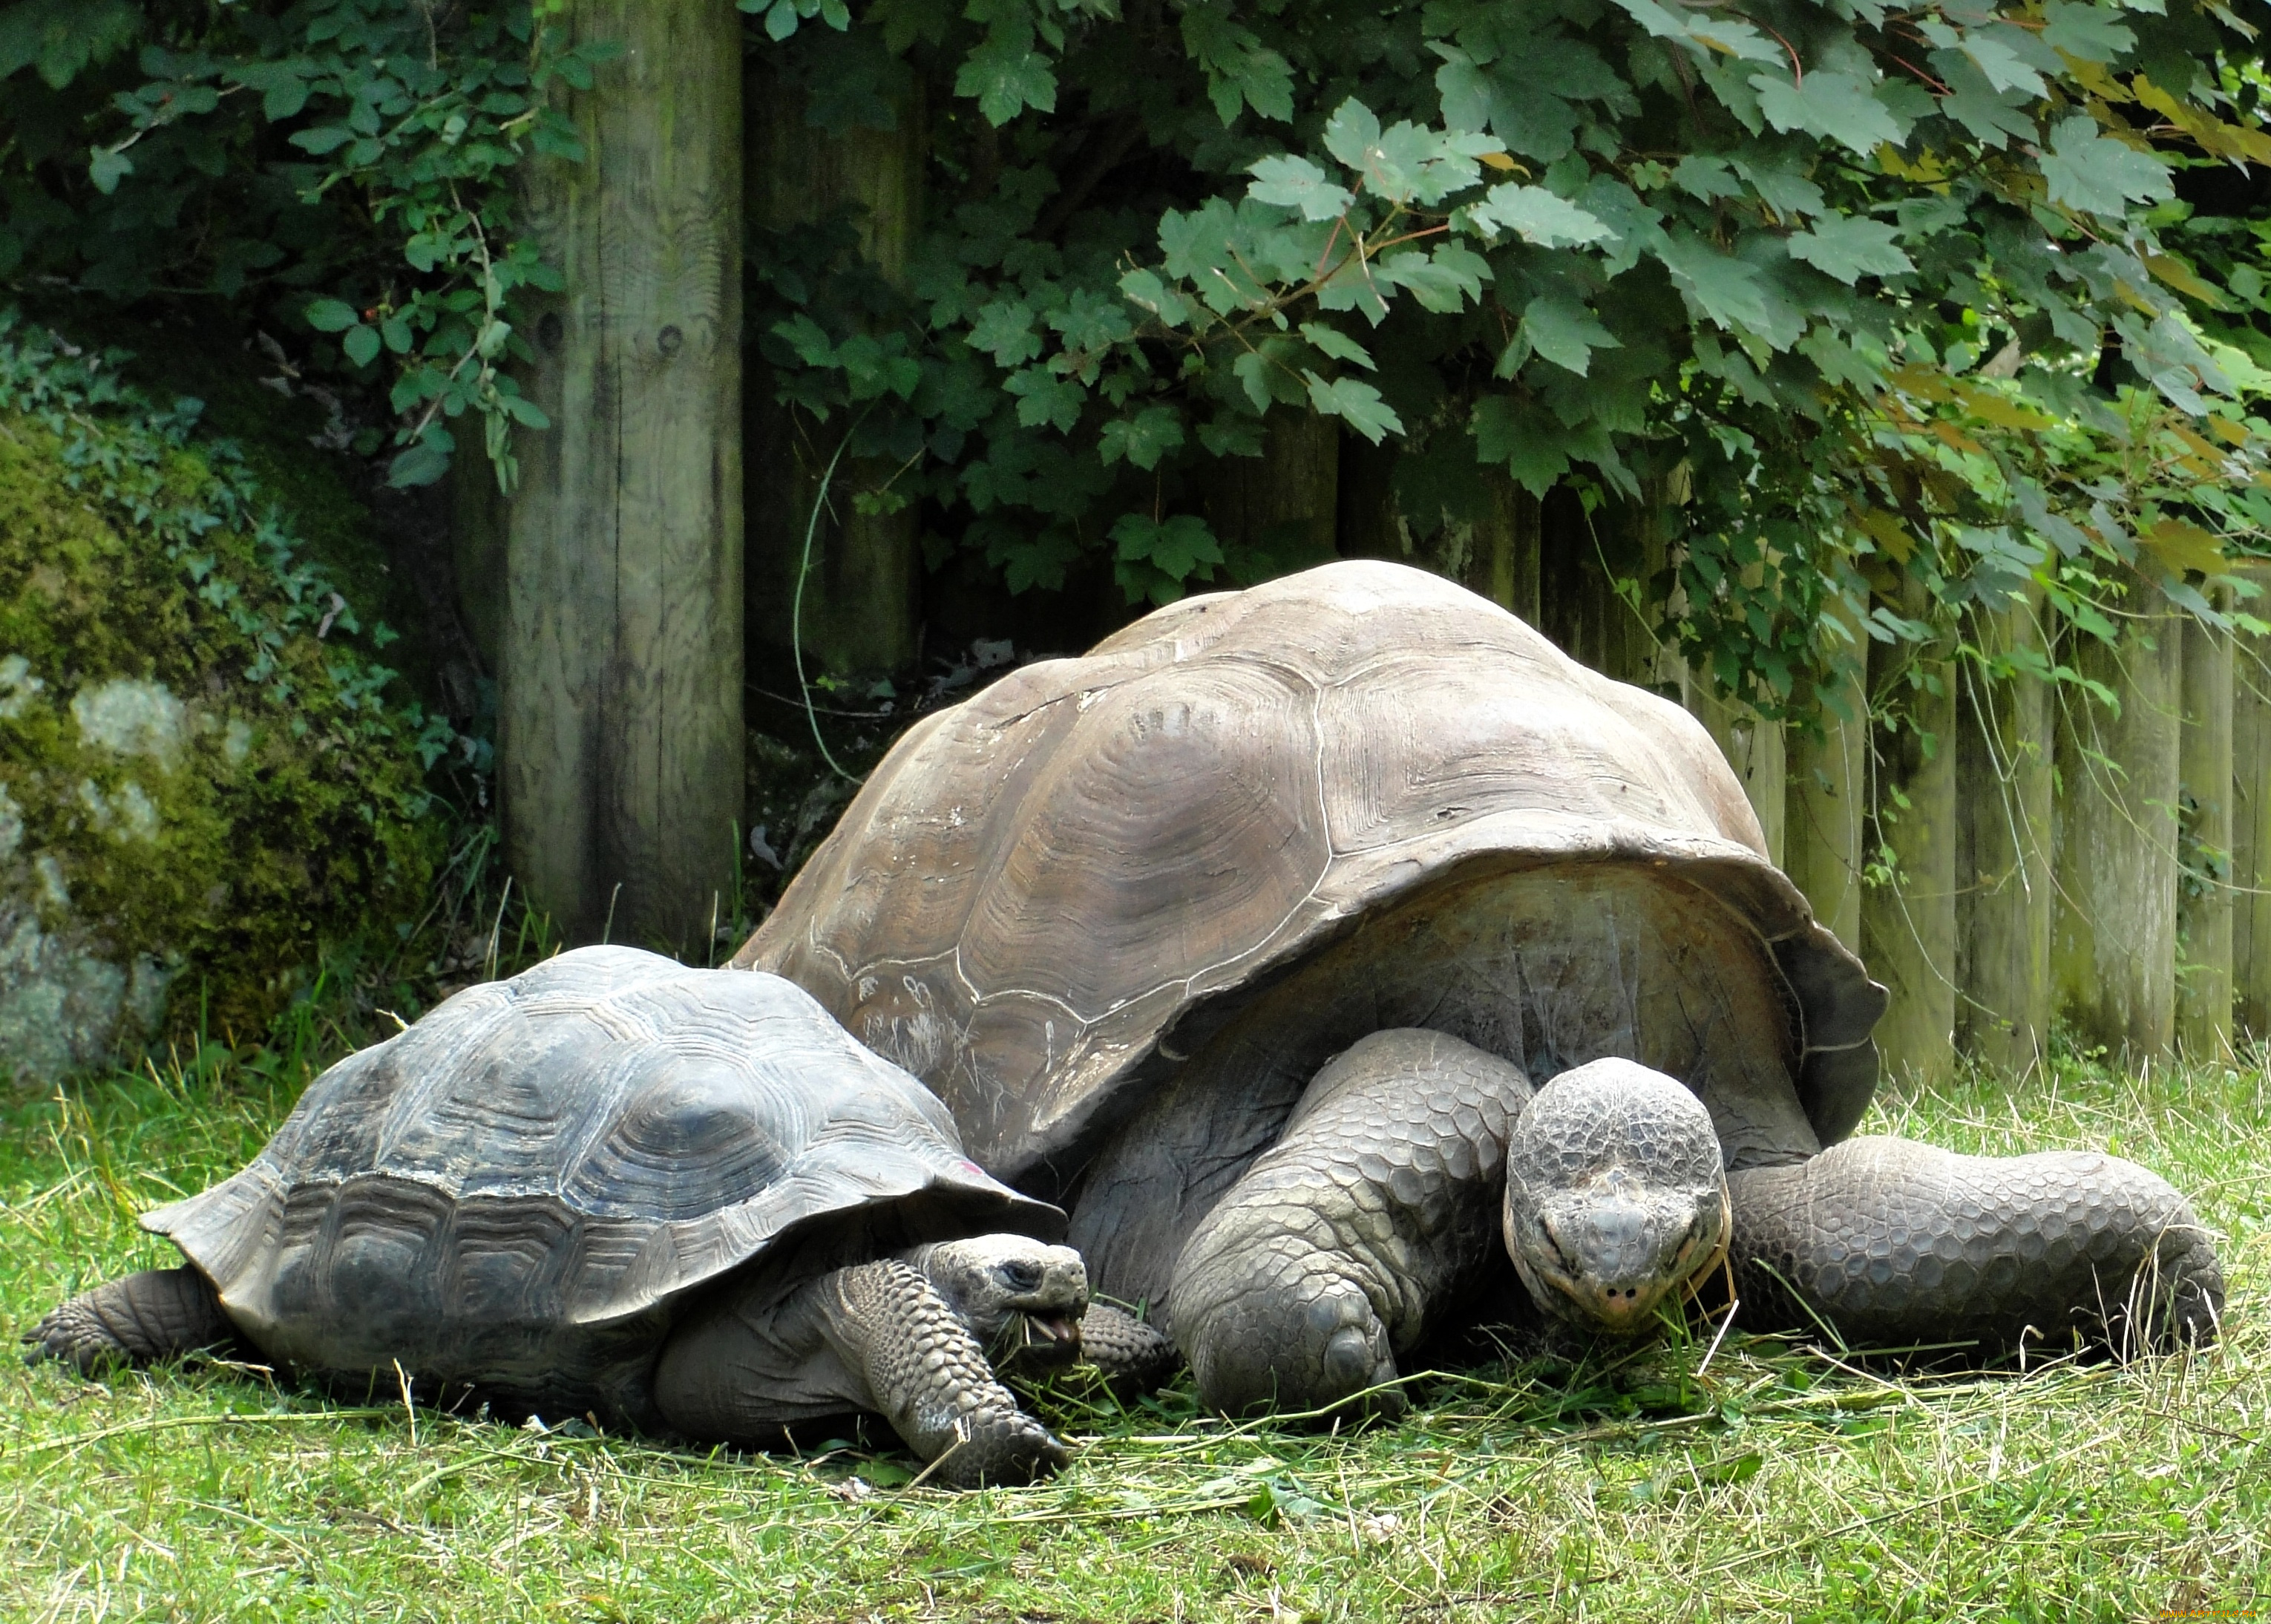 Посмотрим черепахи. Слоновая черепаха панцирь. Галапагосская черепаха. Две черепахи. Картинки черепах.